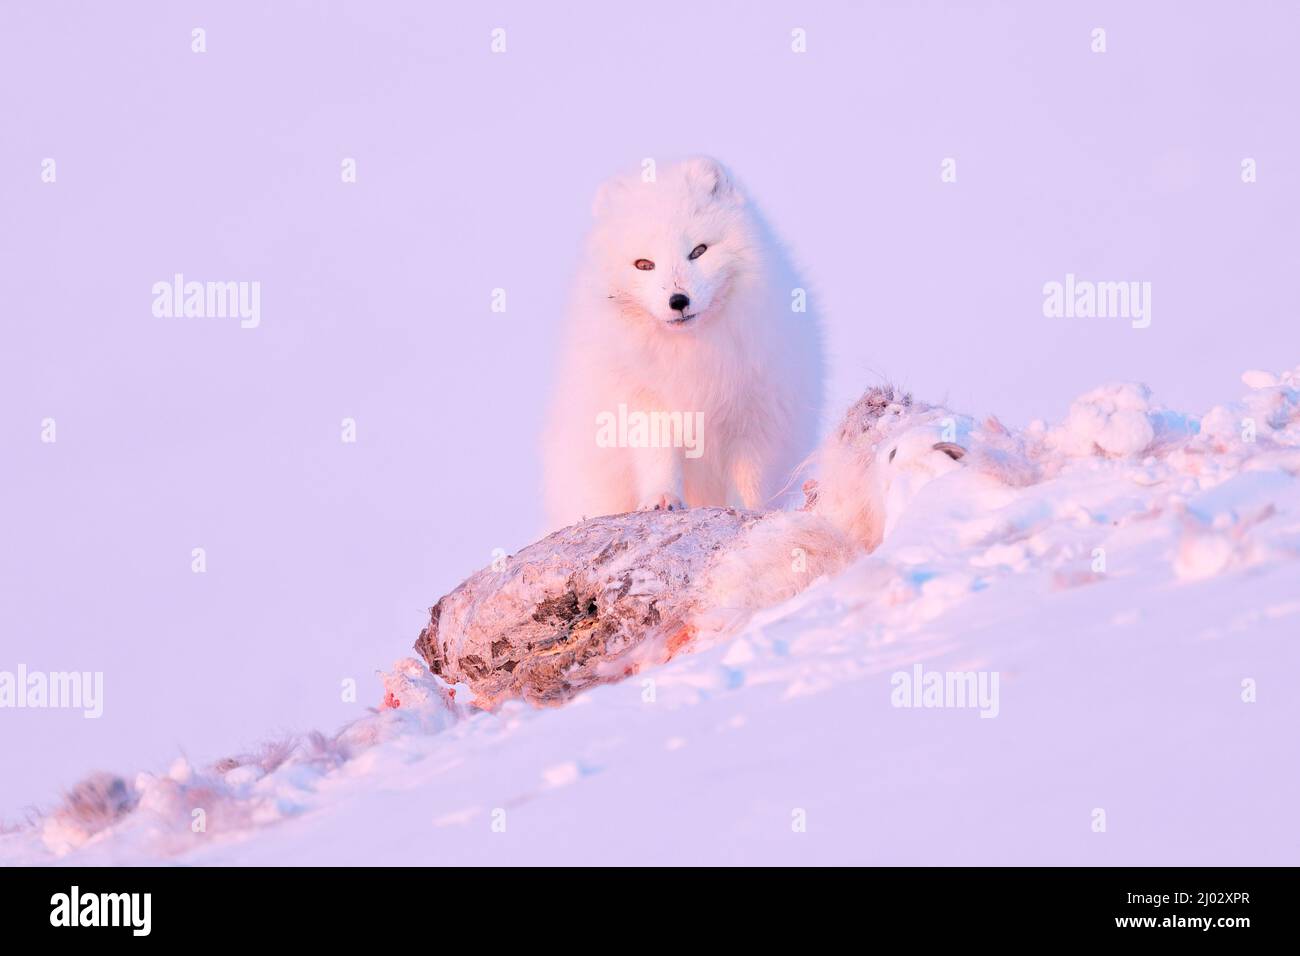 Renard polaire avec carcasse de cerf dans un habitat de neige, paysage hivernal, Svalbard, Norvège. Magnifique animal blanc dans la neige. Scène d'action de la faune de la nature Banque D'Images